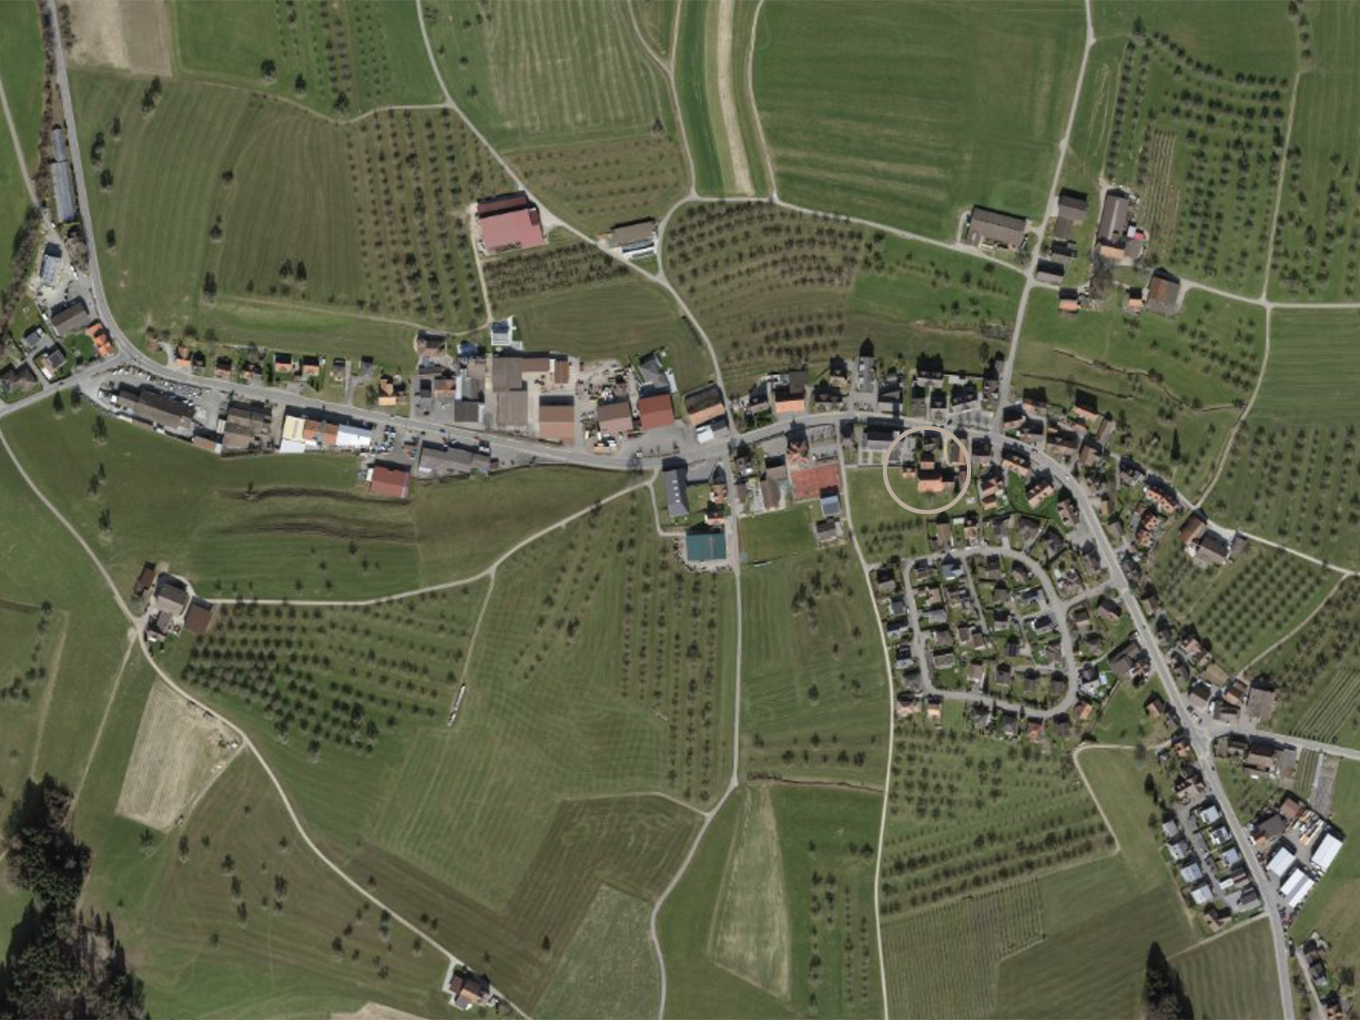 Luftbild der Gemeinde Muolen mit dem Meierhof im Dorfzentrum.